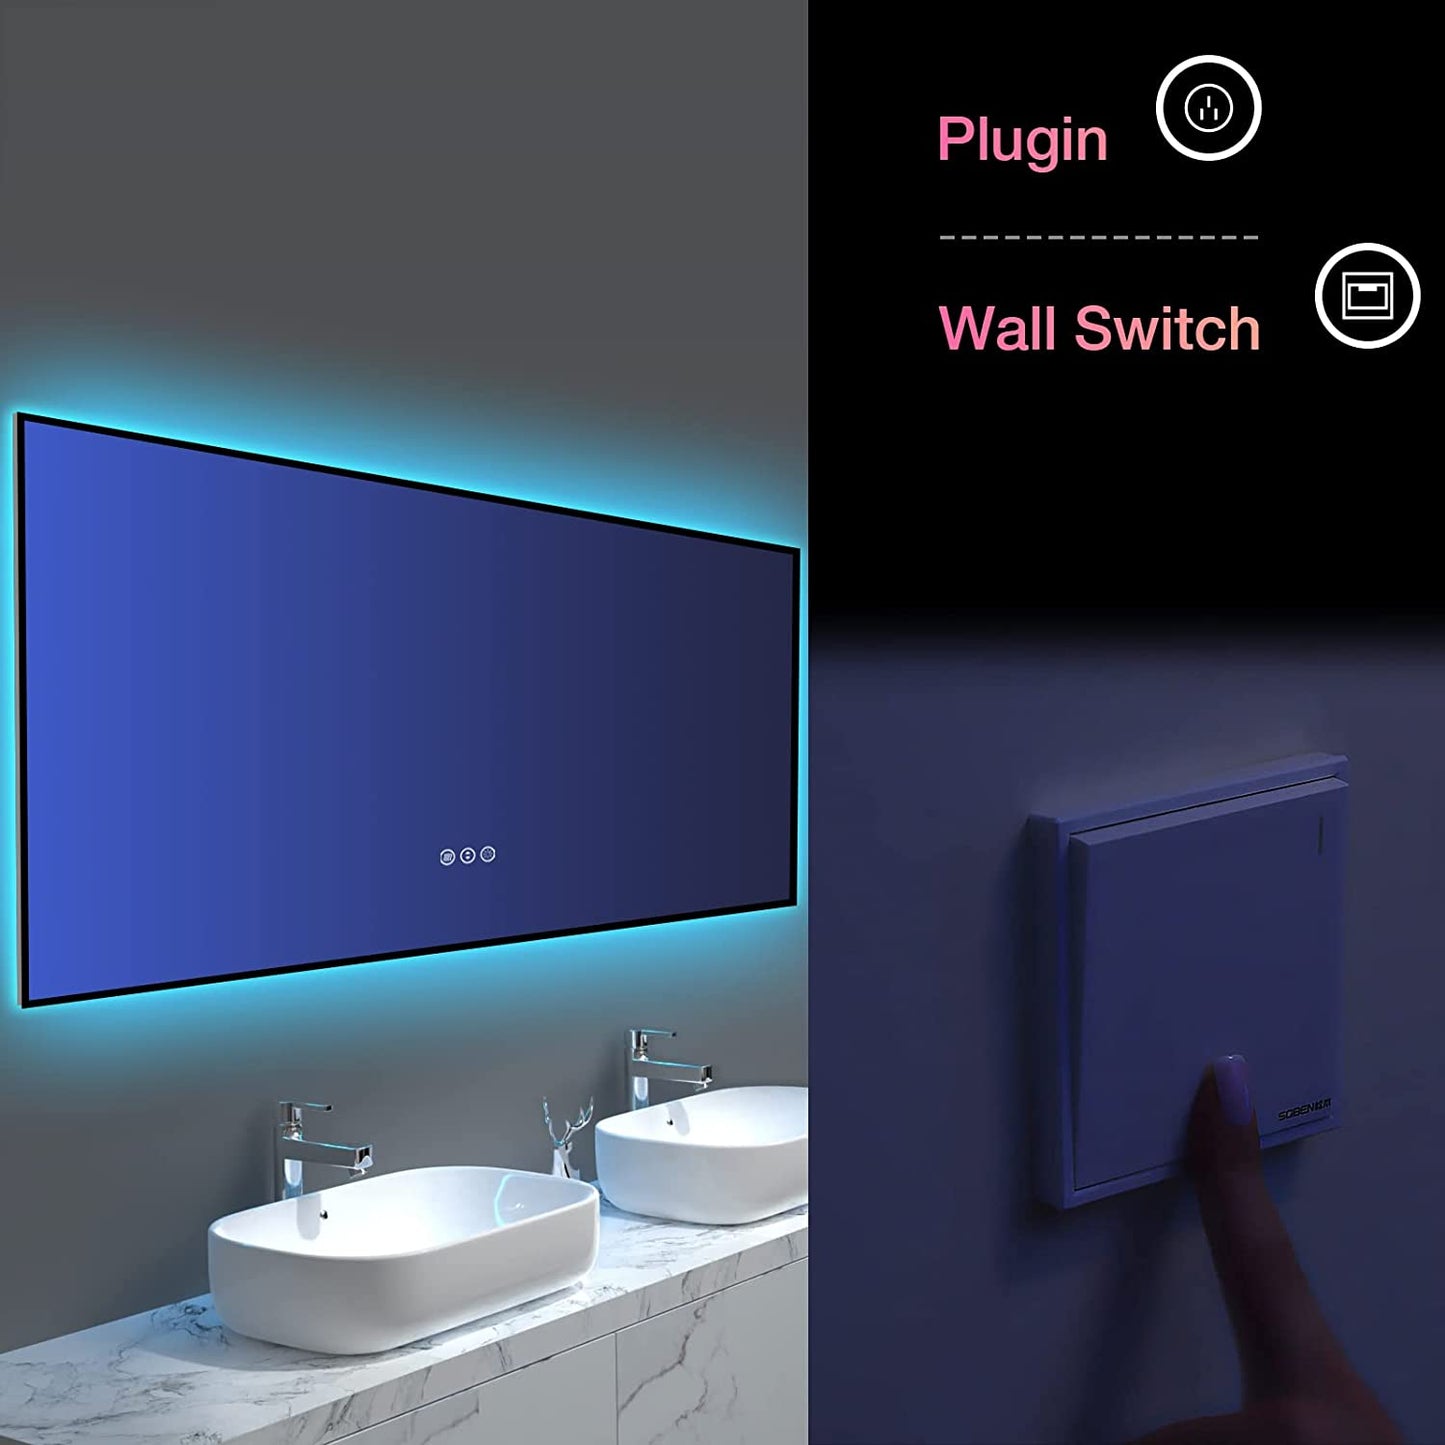 Amorho LED Bathroom Mirror with RGB Backlit, 84"x32"